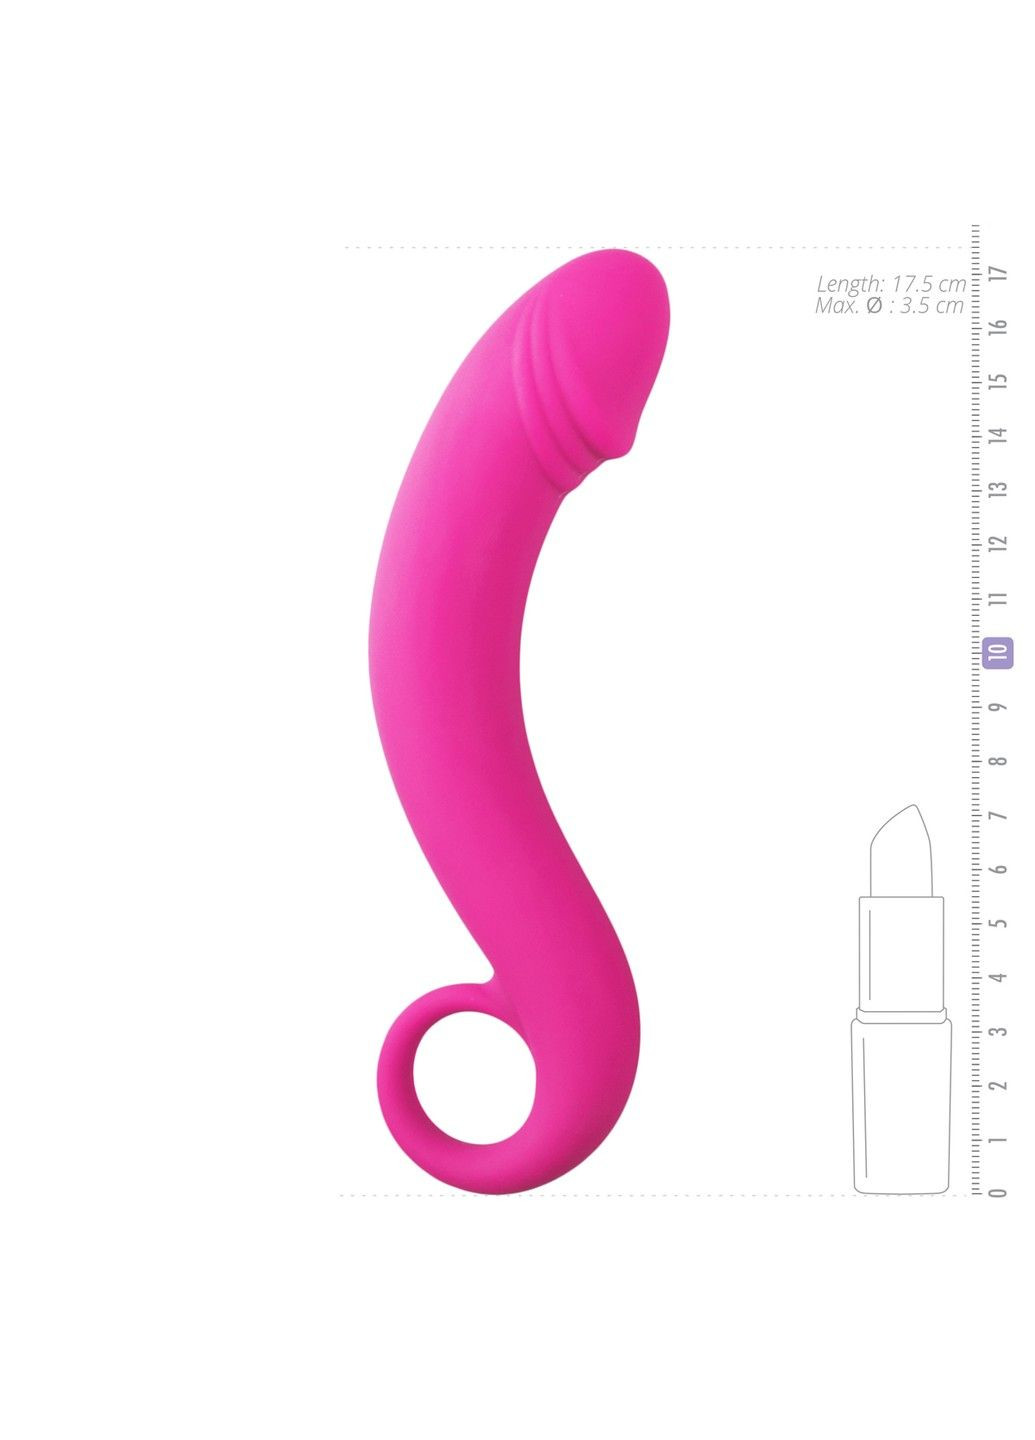 Изогнутый фаллоимитатор Curved Dong для простаты розовый, 17.5 см x 3.5 см. EasyToys (290850835)